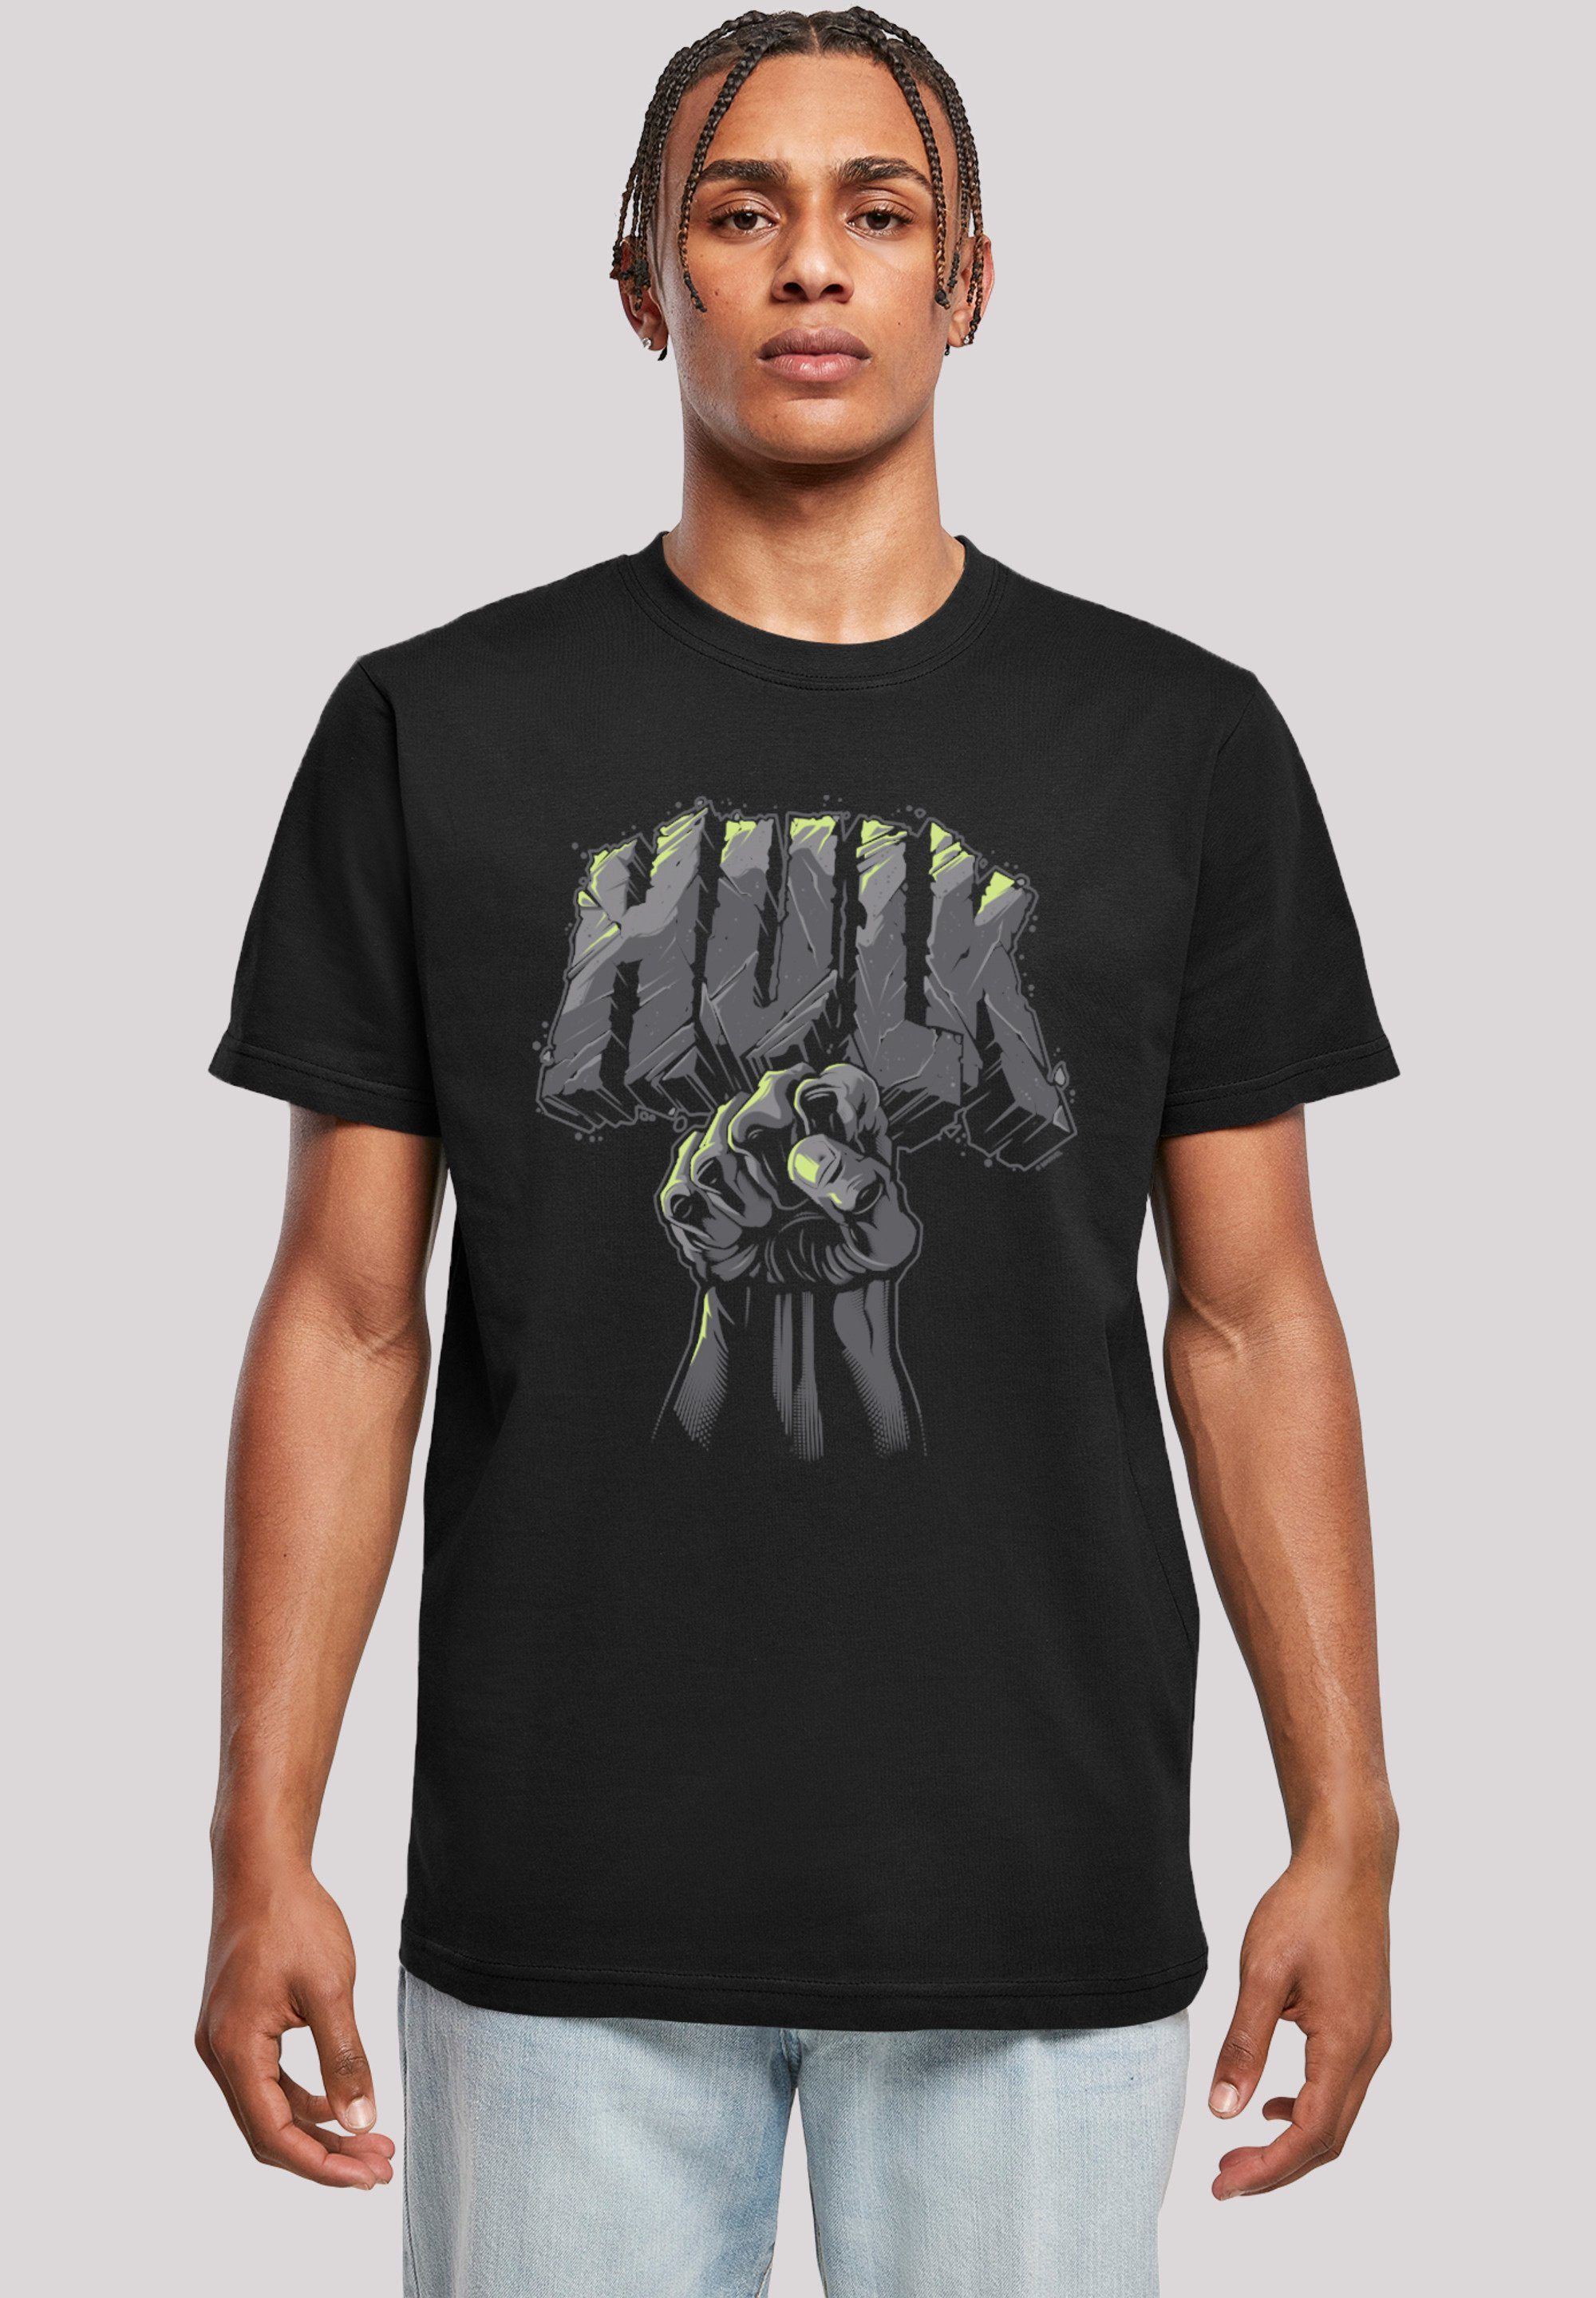 Print, Rippbündchen Hulk am T-Shirt Hals Saum F4NT4STIC Punch und Superhelden Logo am Marvel Doppelnähte